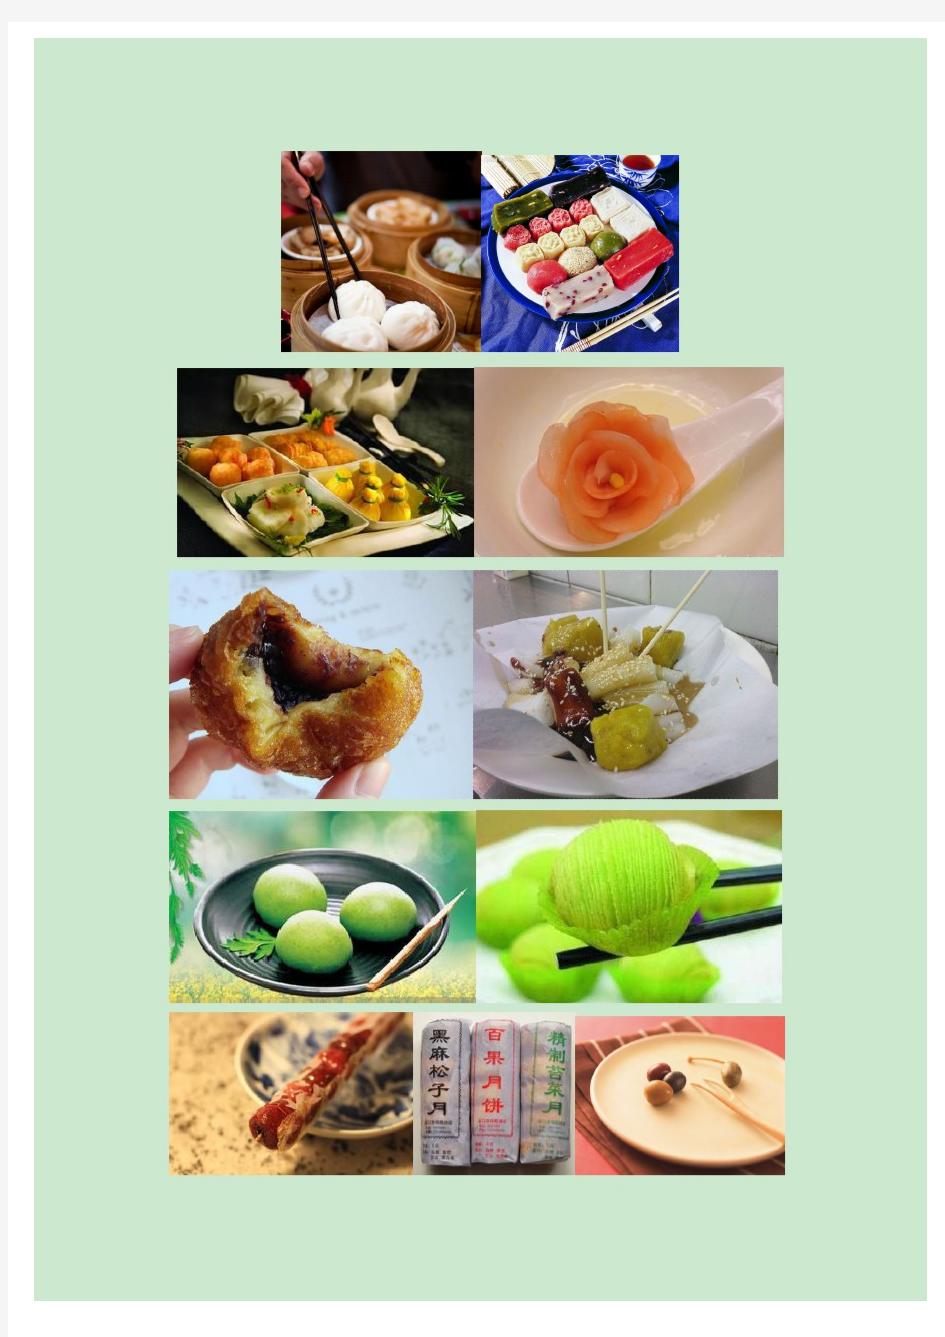 中式常见点心分类 及食用工具